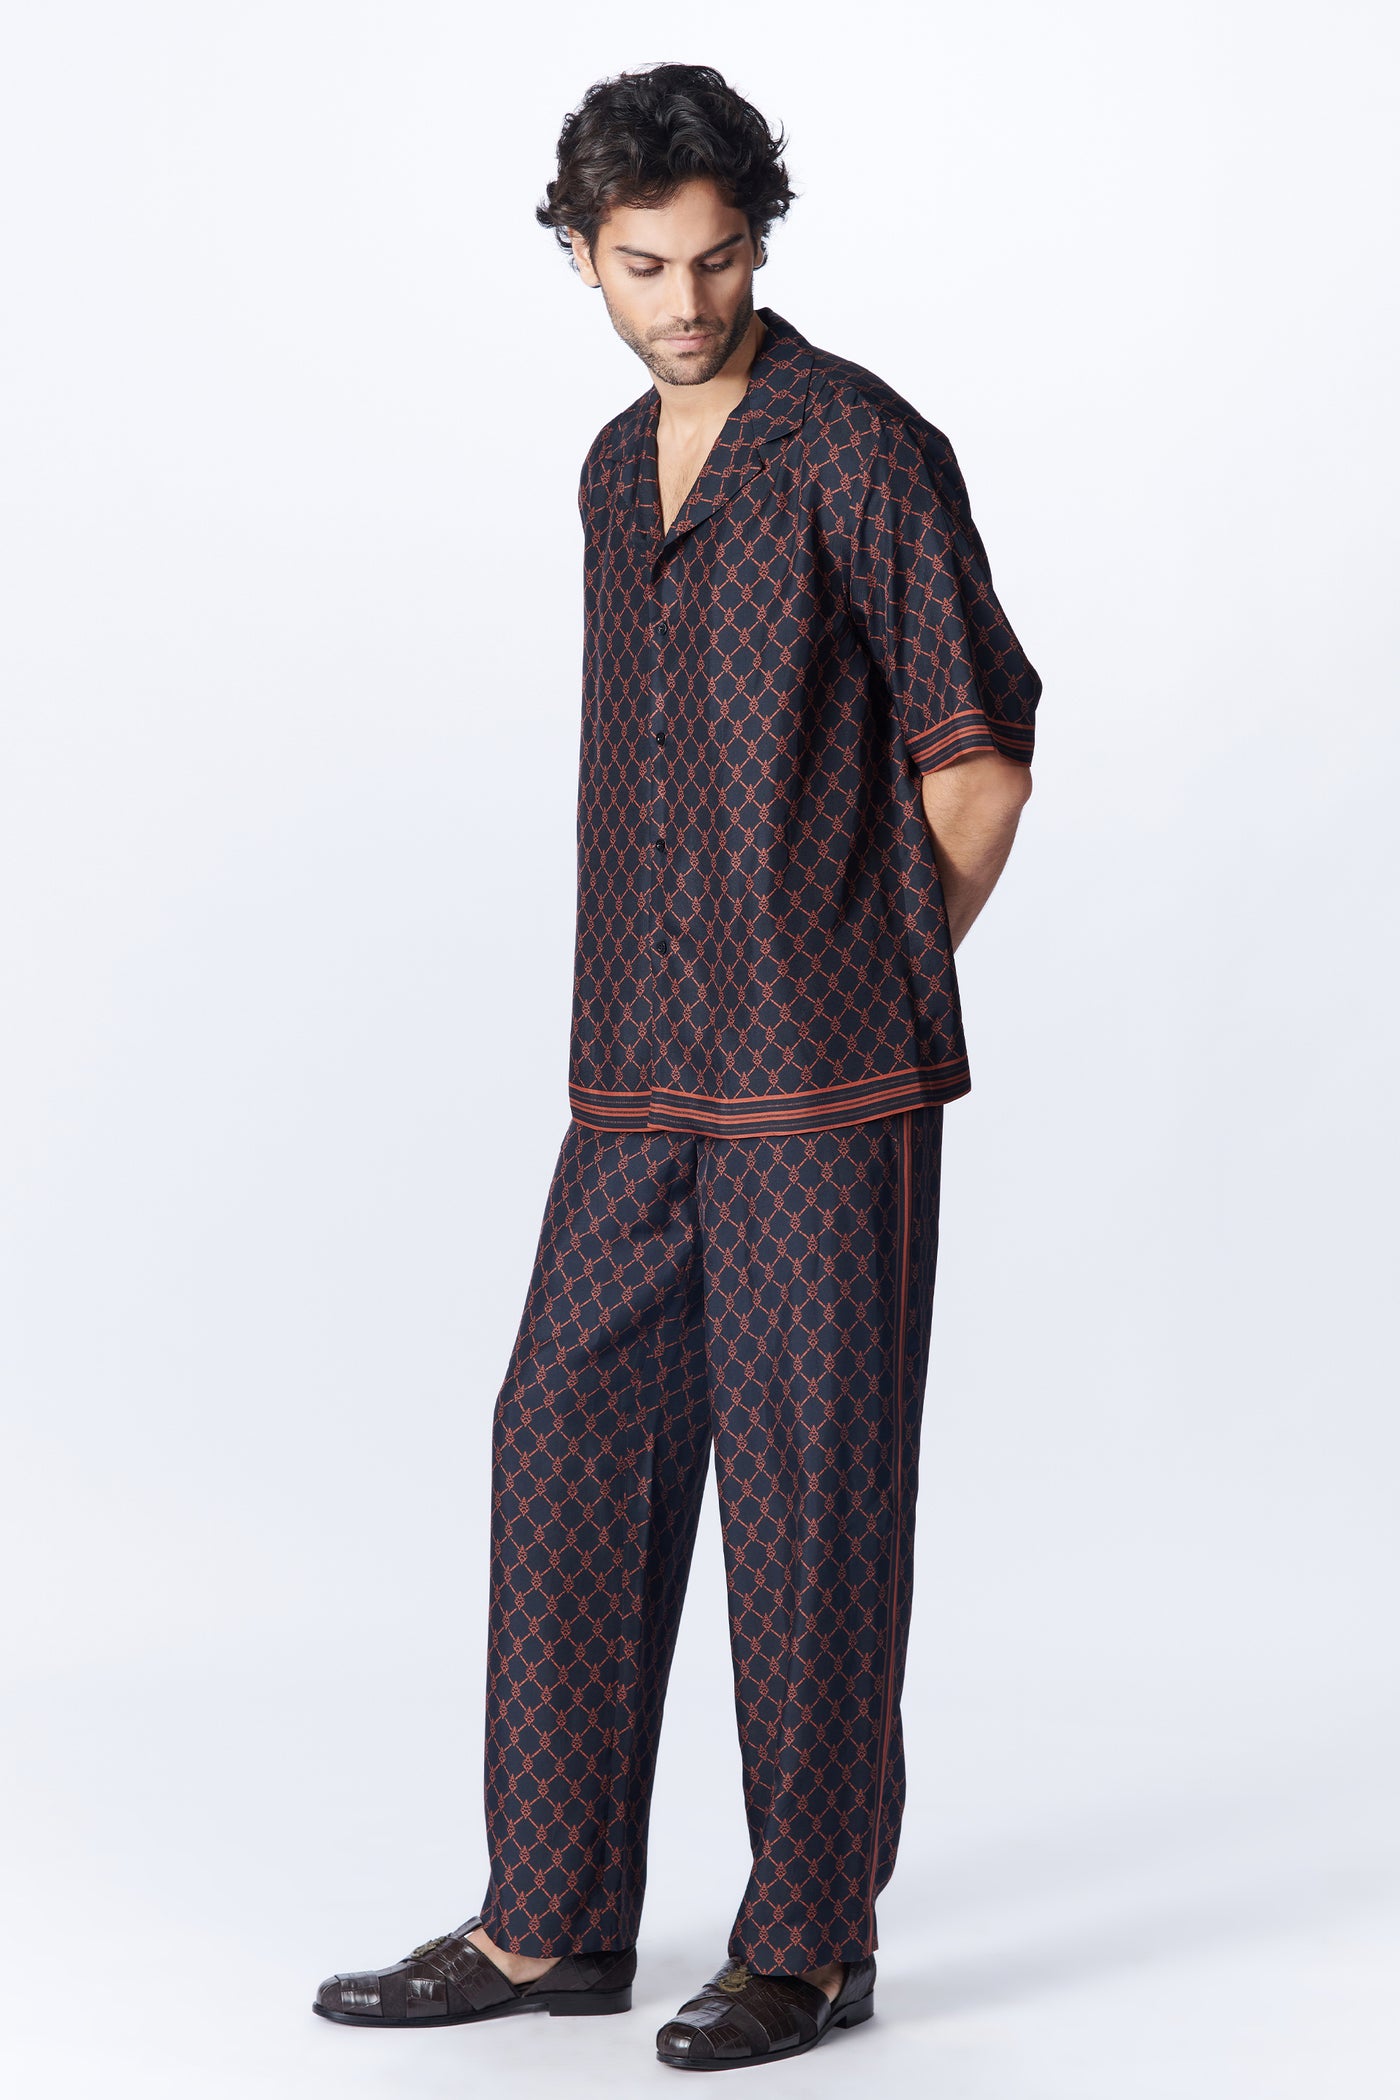 SN By Shantanu Nikhil Menswear Black Twill Silk Shirt indian designer wear online shopping melange singapore